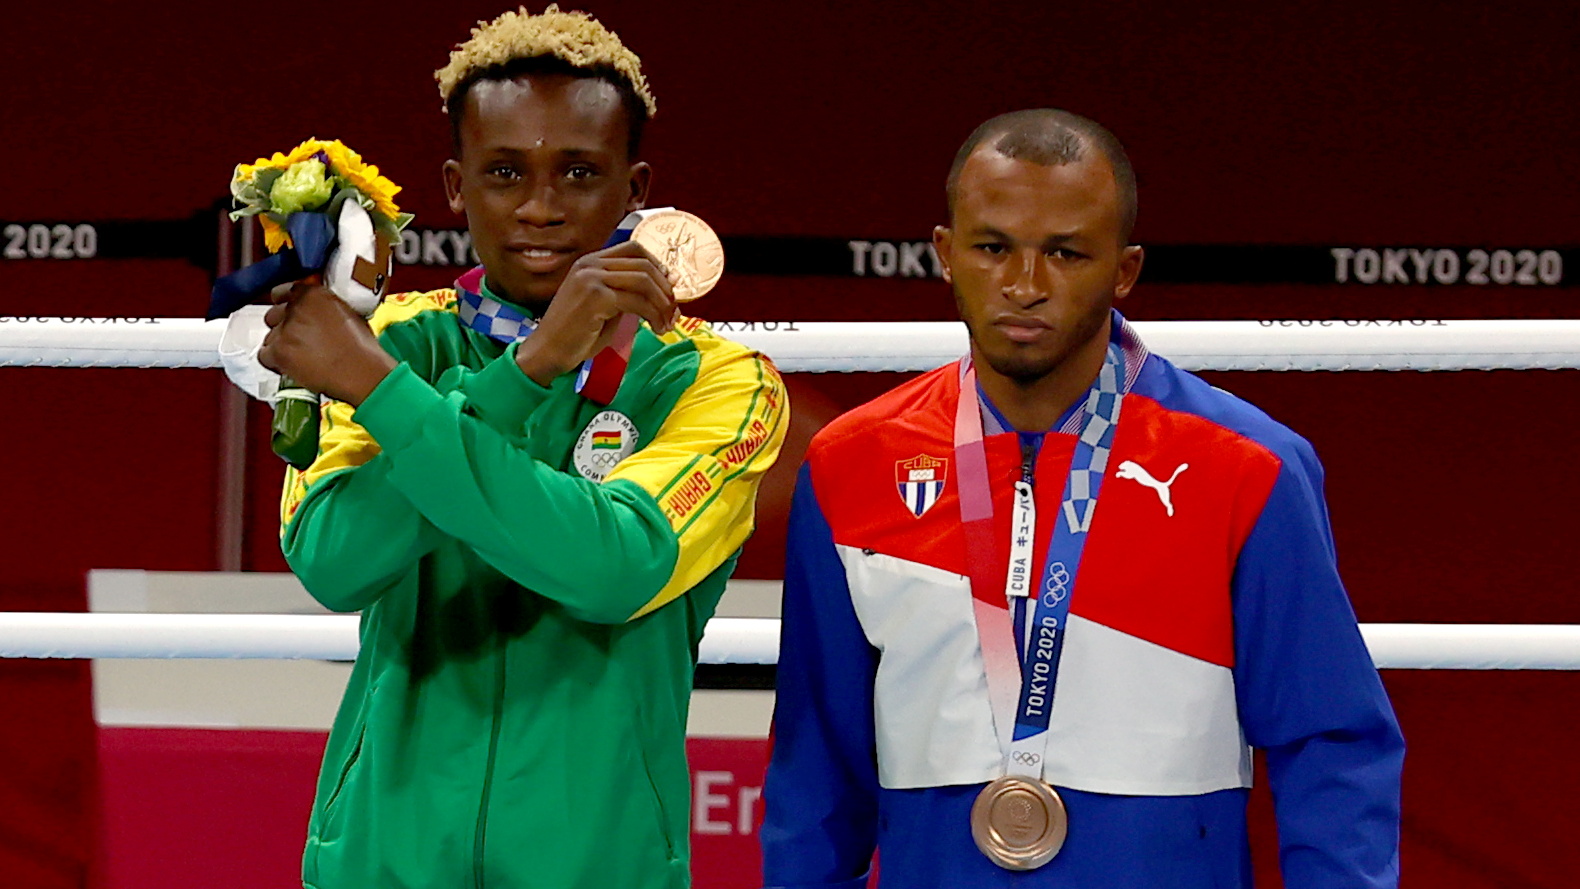 Los medallistas de bronce Samuel Takyi de Ghana y Lázaro Álvarez de Cuba durante la ceremonia de entrega de medallas del boxeo.